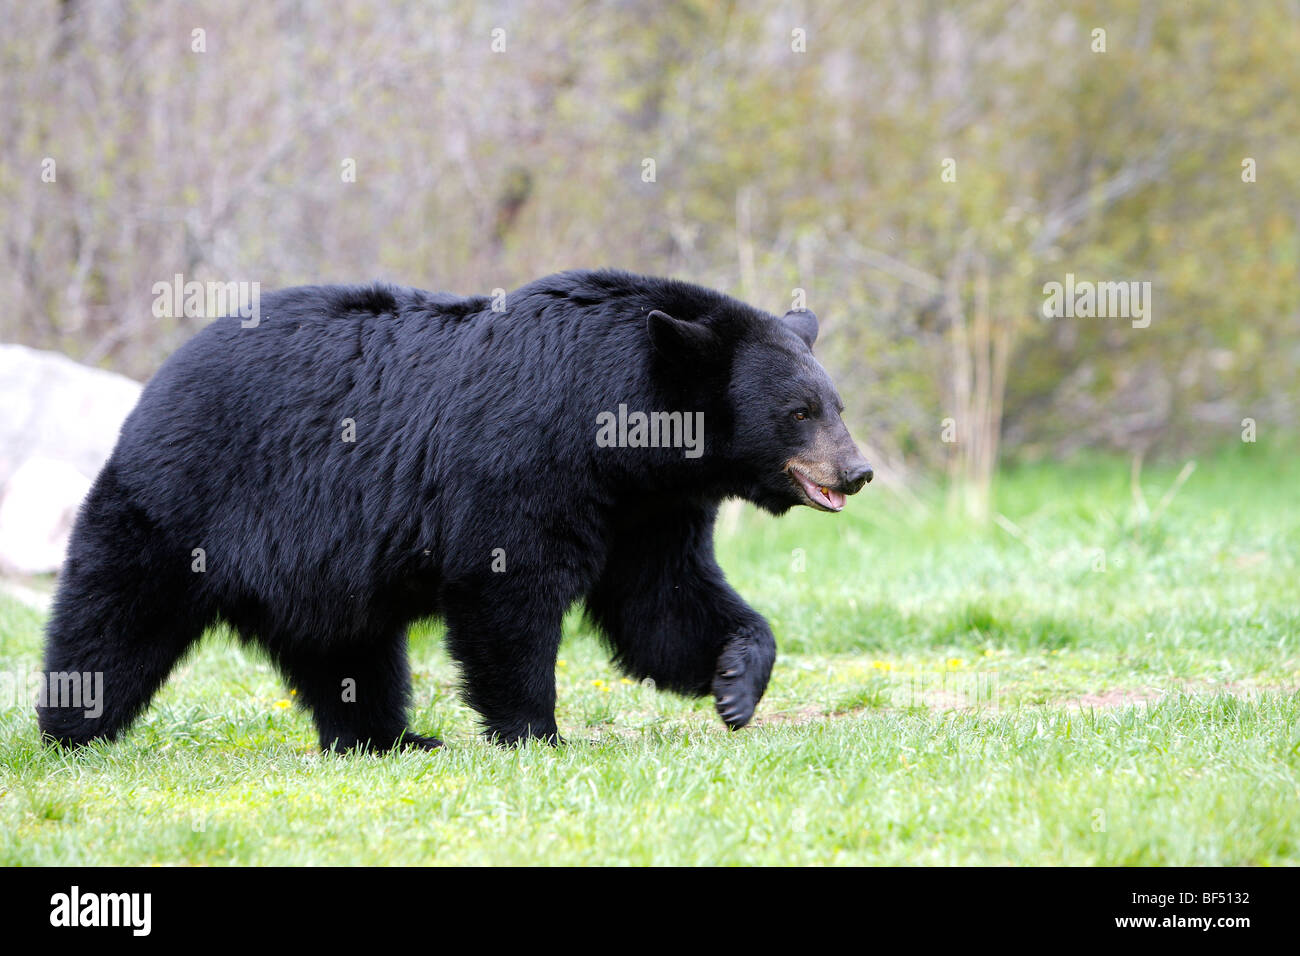 Ours noir (Ursus americanus). Mâle adulte marchant sur une clairière. Banque D'Images